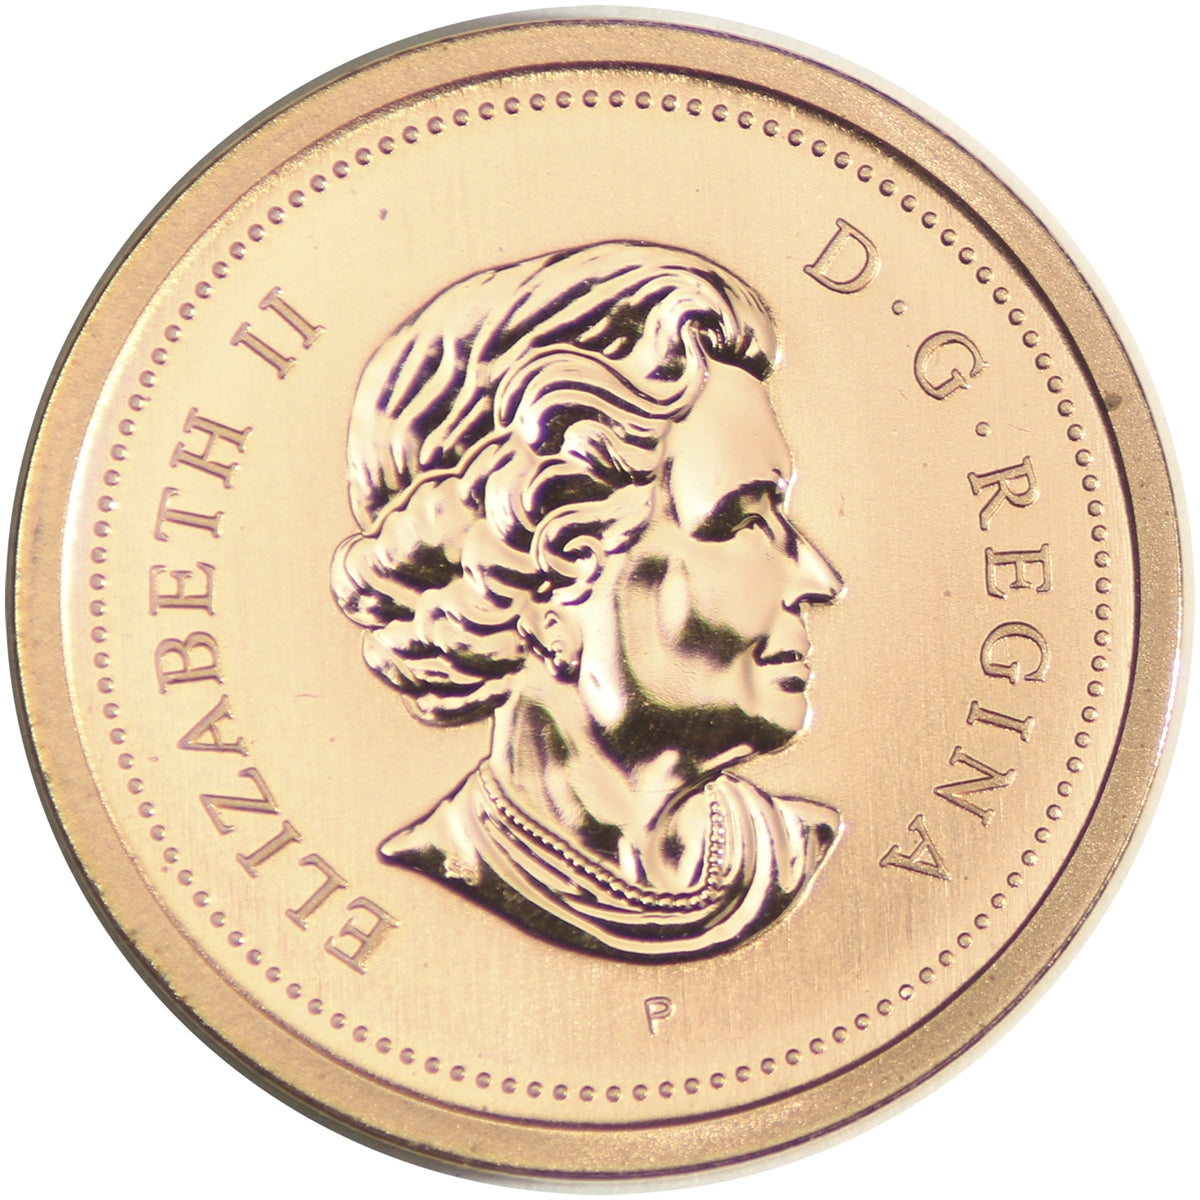 2004P Canada 1-cent Specimen